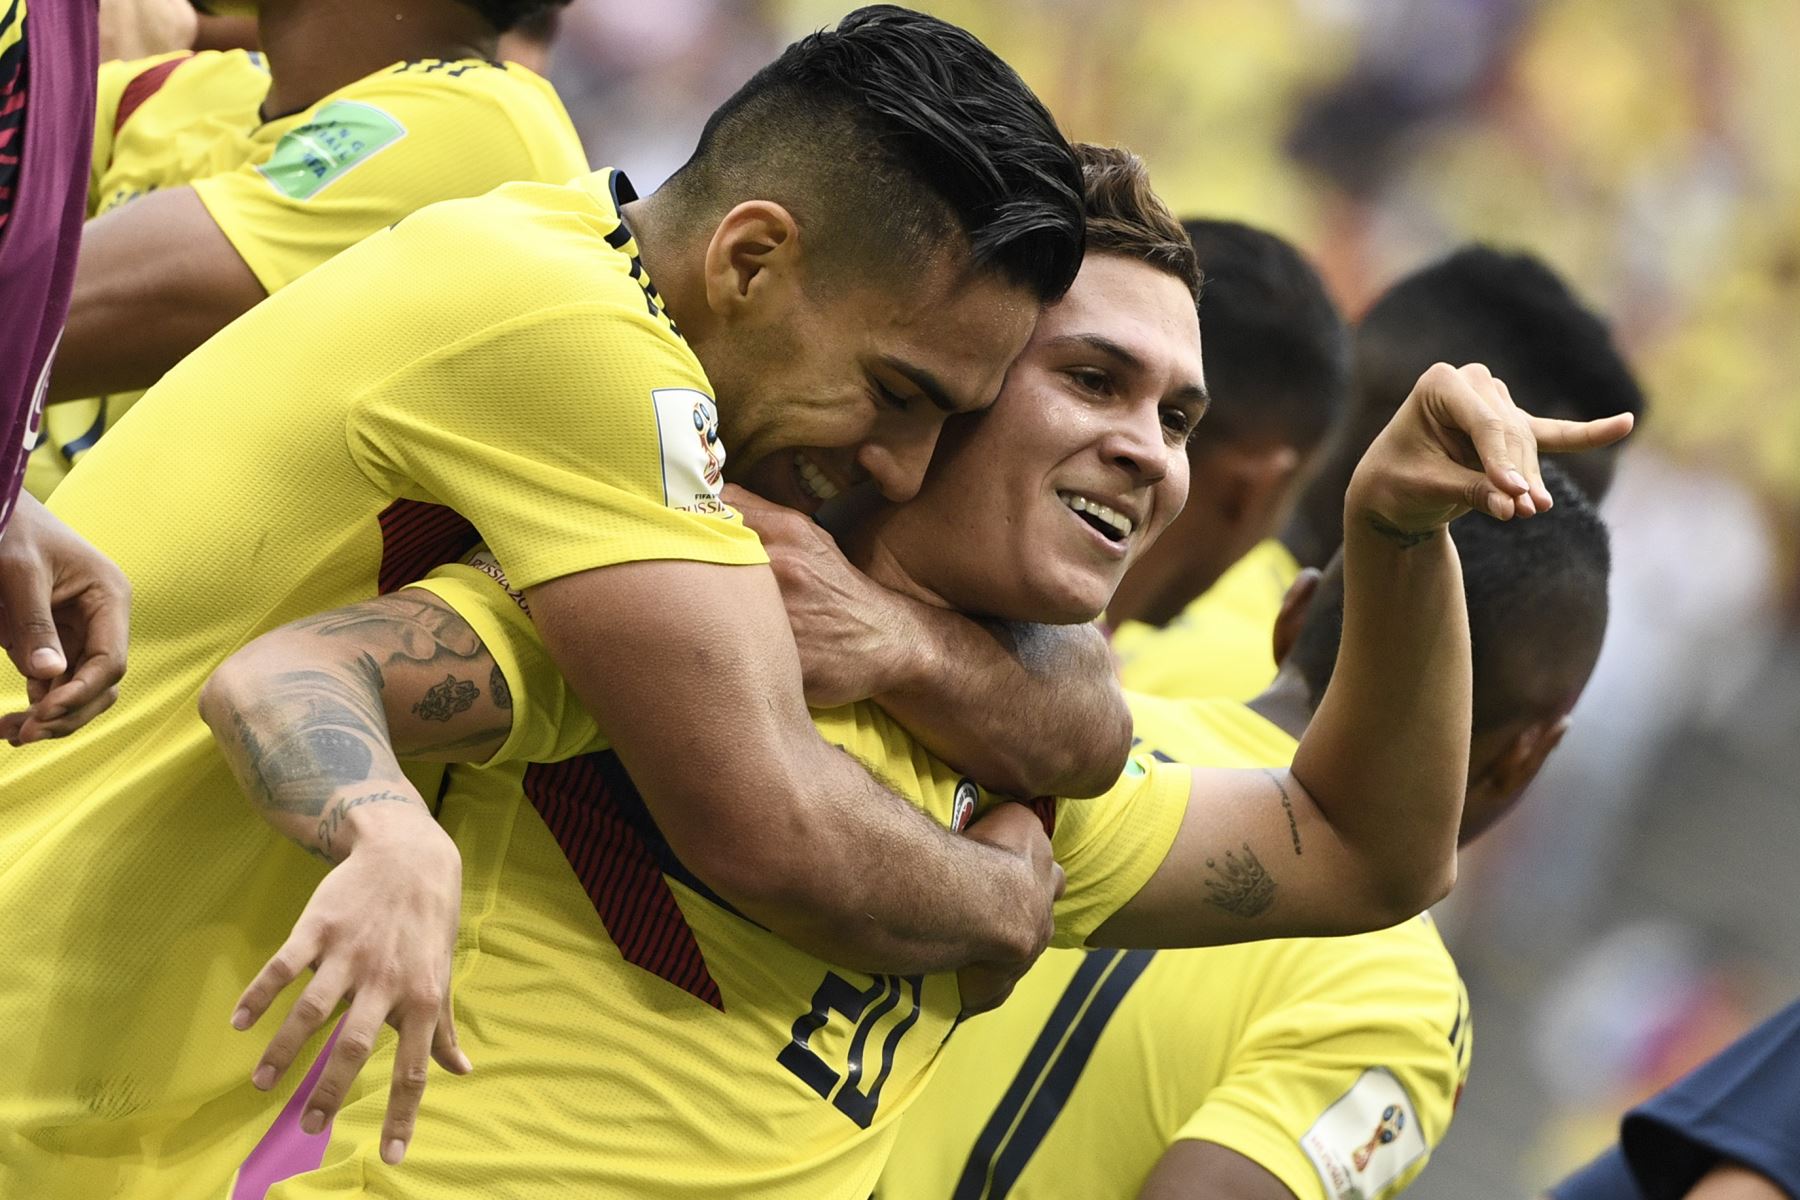 El centrocampista colombiano Juan Quintero (C) celebra con el delantero colombiano Falcao (L) y otros compañeros después de anotar un gol durante el partido de fútbol del Grupo H Rusia 2018 entre Colombia y Japón en el Mordovia Arena en Saransk el 19 de junio de 2018. / AFP